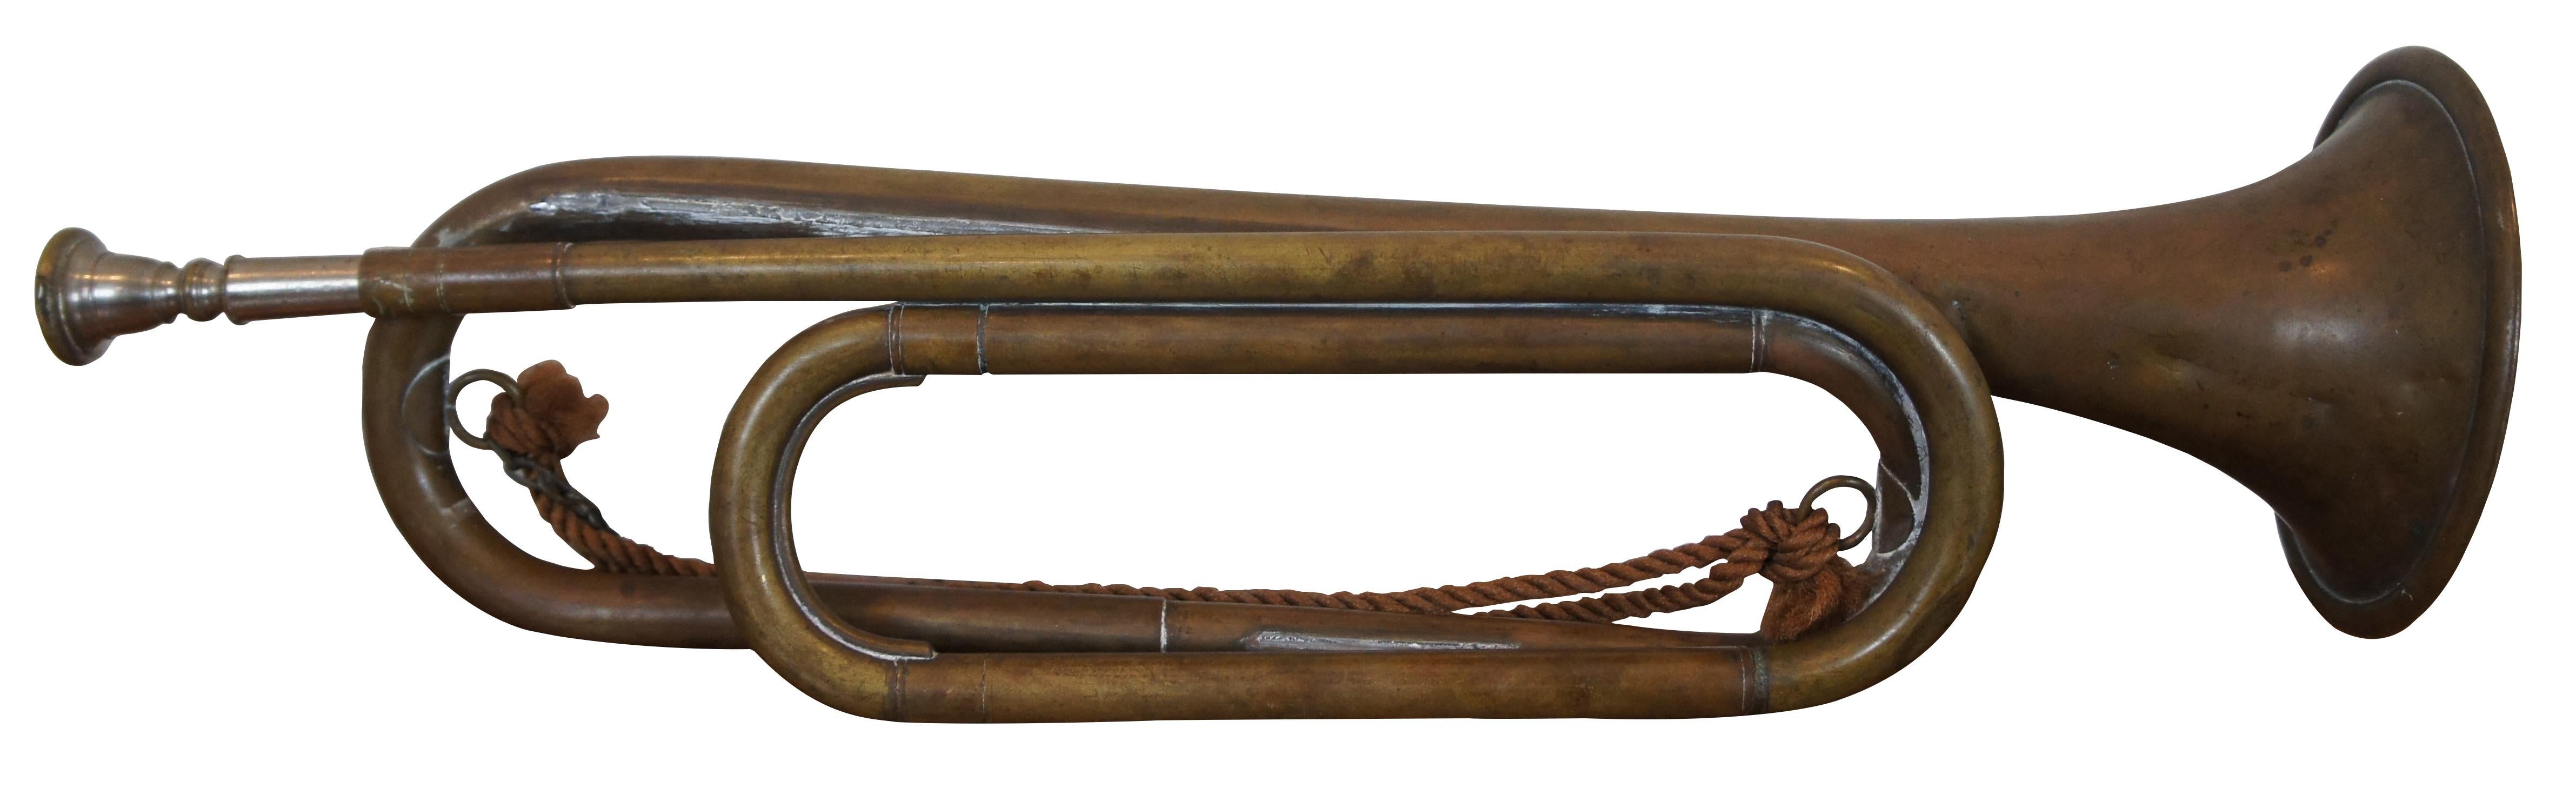 Bugle en laiton de style militaire / scout, fabriqué en Tchécoslovaquie. Mesure : 17